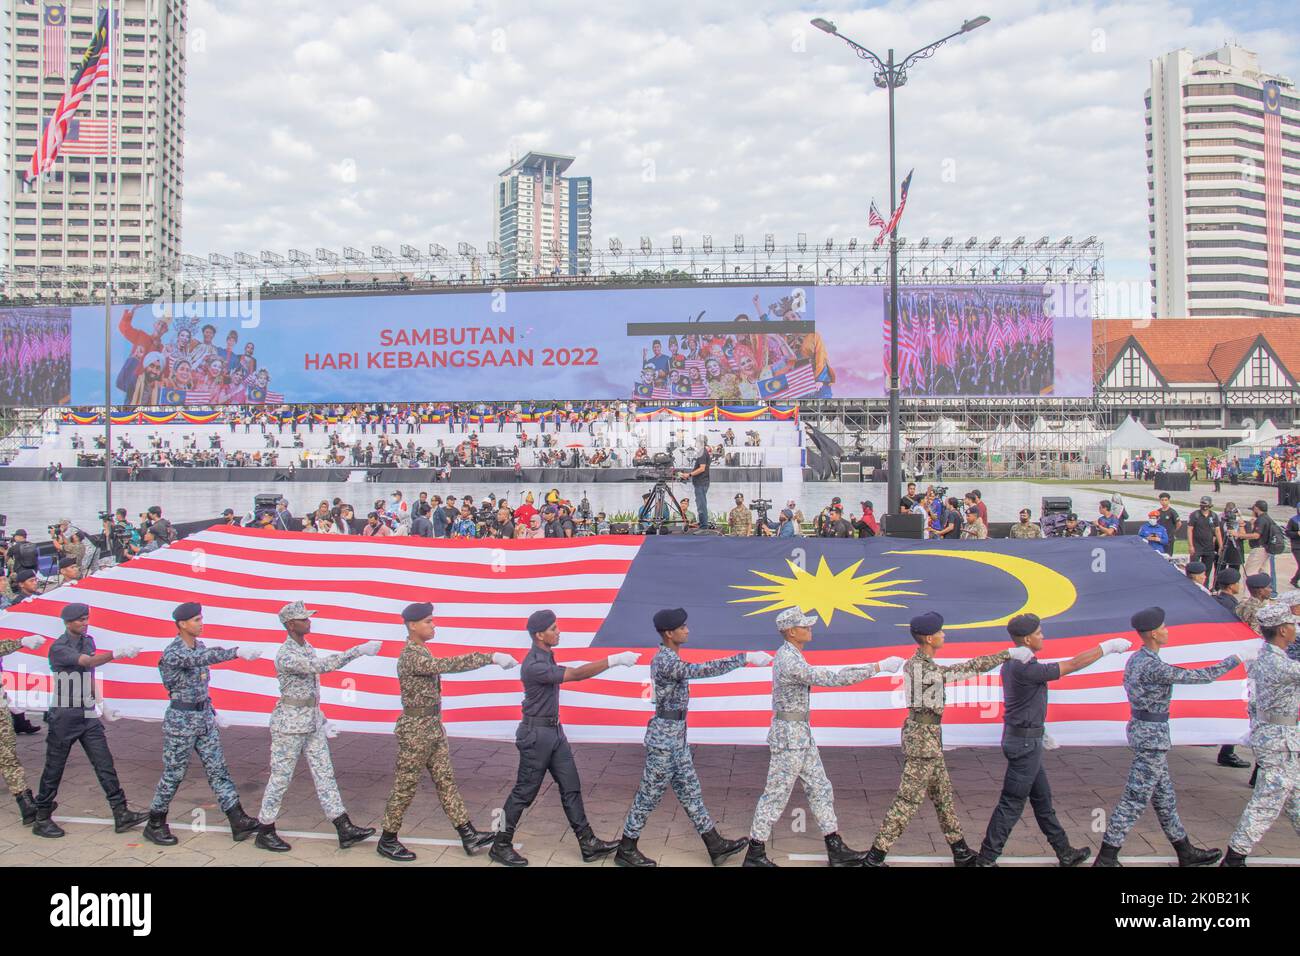 Junge Kadetten der malaysischen Streitkräfte von Armee, Marine, Seeschifffahrt, Luftwaffe und Polizei marschieren mit der riesigen Malaysia-Flagge Stockfoto